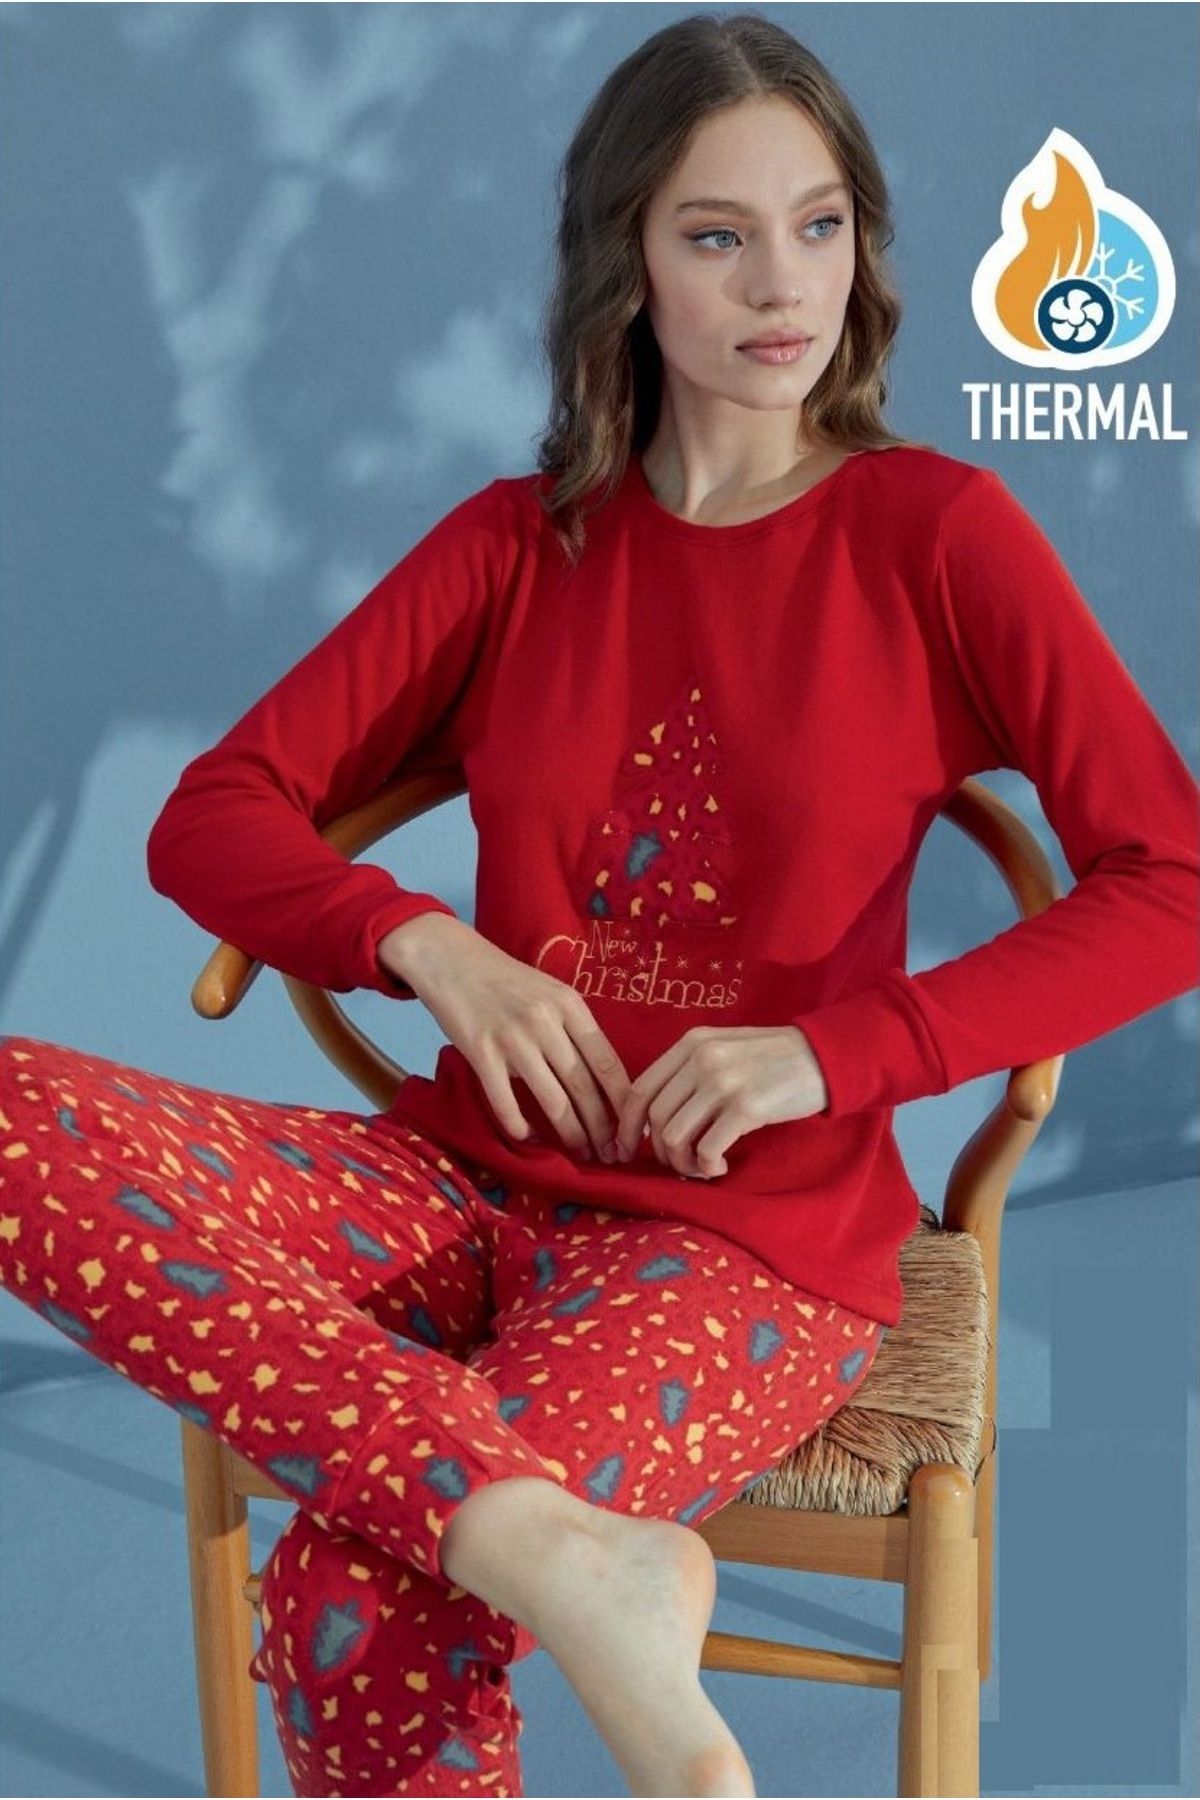 Manolya Kadın Yılbaşı Temalı Termal Pijama Takımı